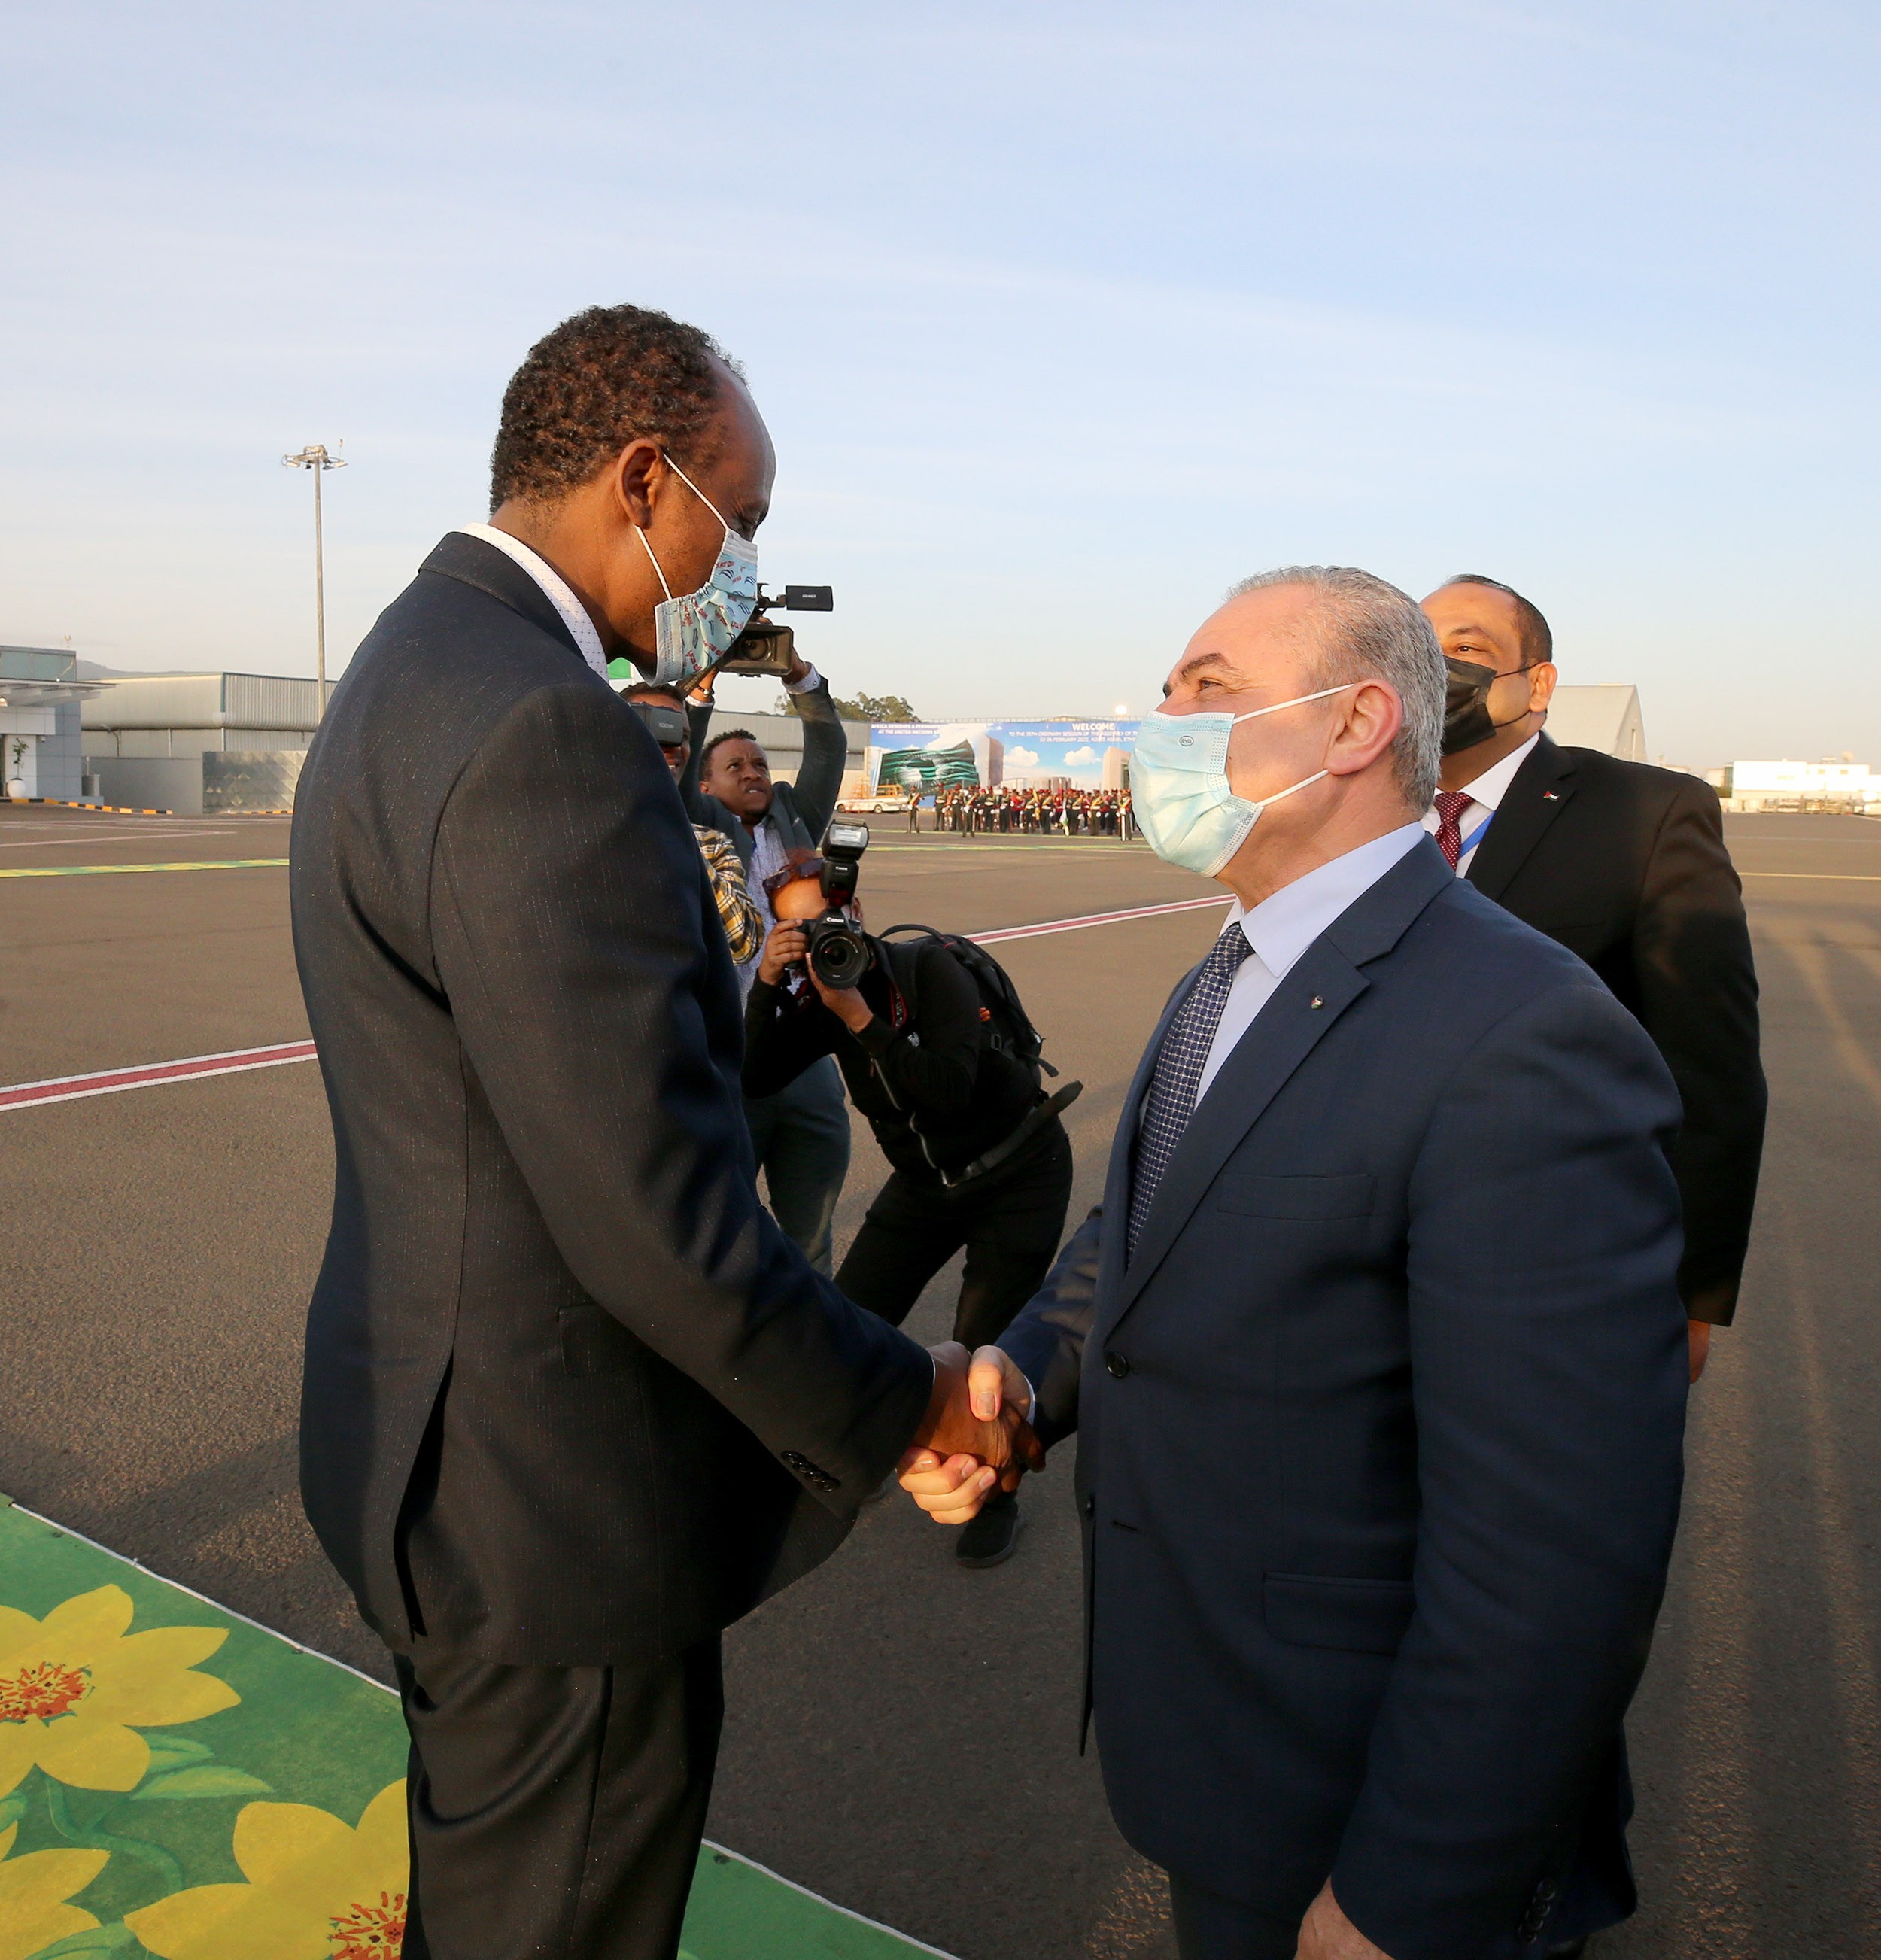 اشتية يصل أديس أبابا للمشاركة في قمة الاتحاد الأفريقي